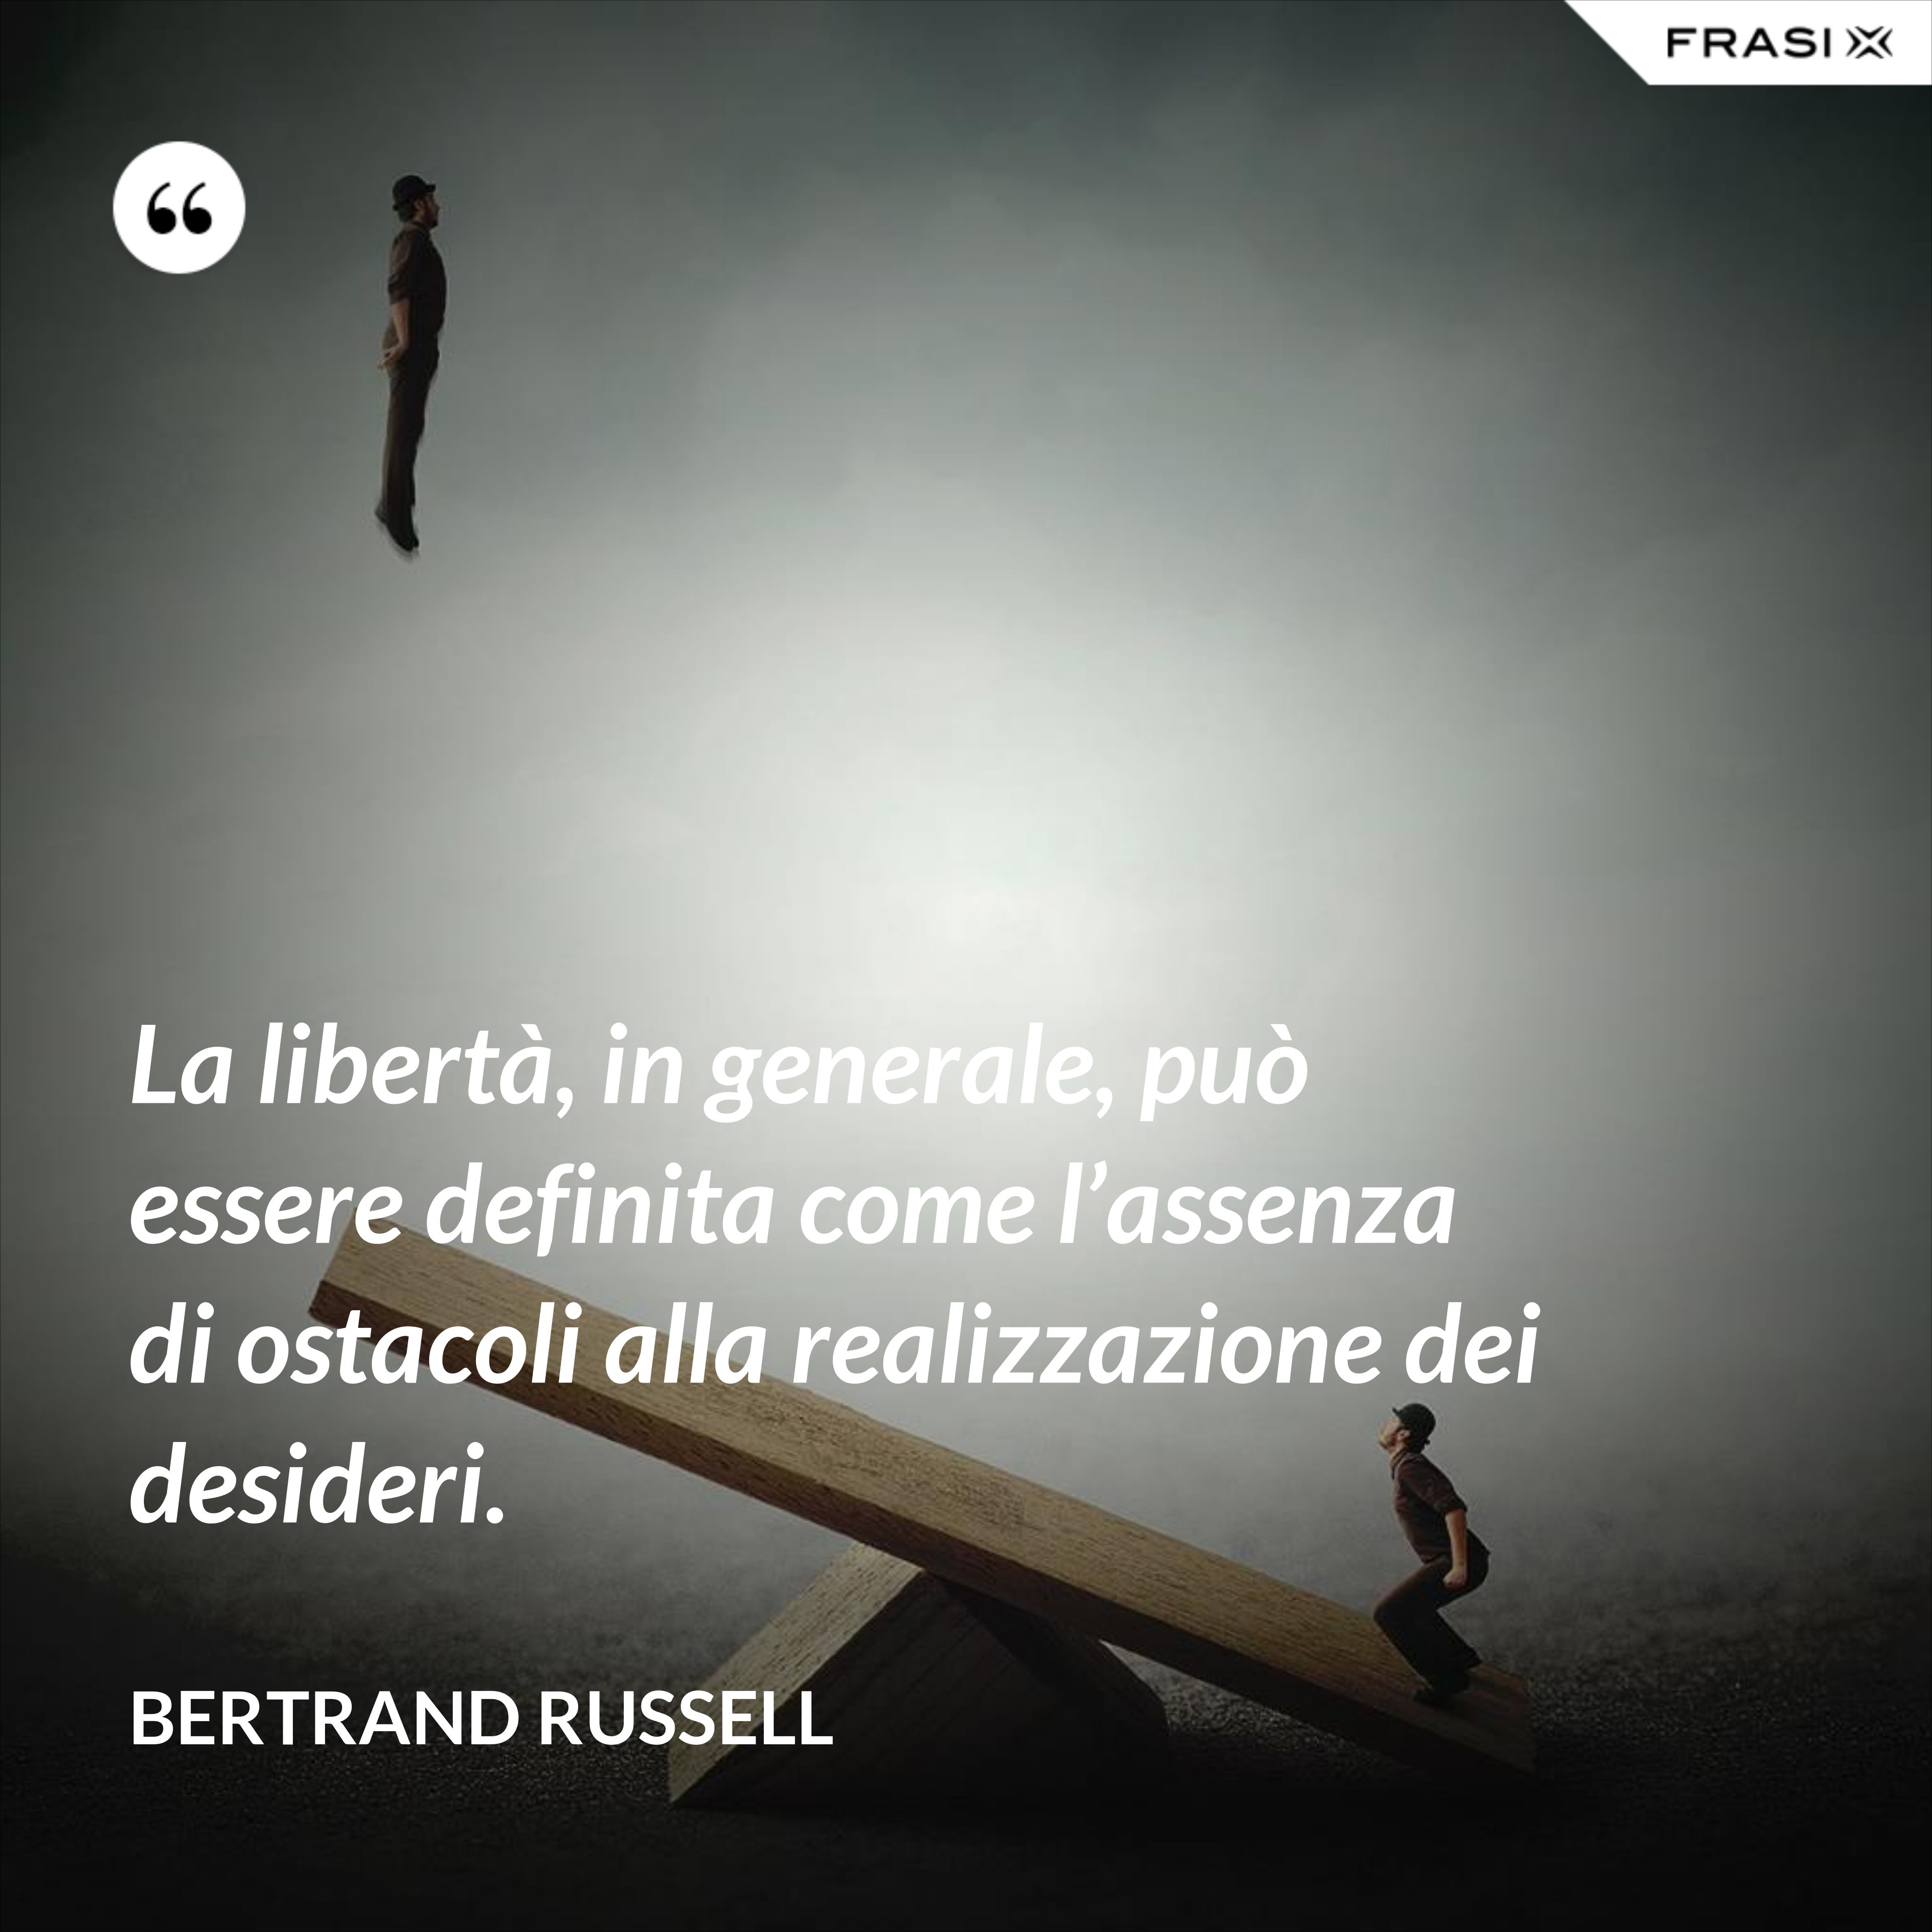 La libertà, in generale, può essere definita come l’assenza di ostacoli alla realizzazione dei desideri. - Bertrand Russell